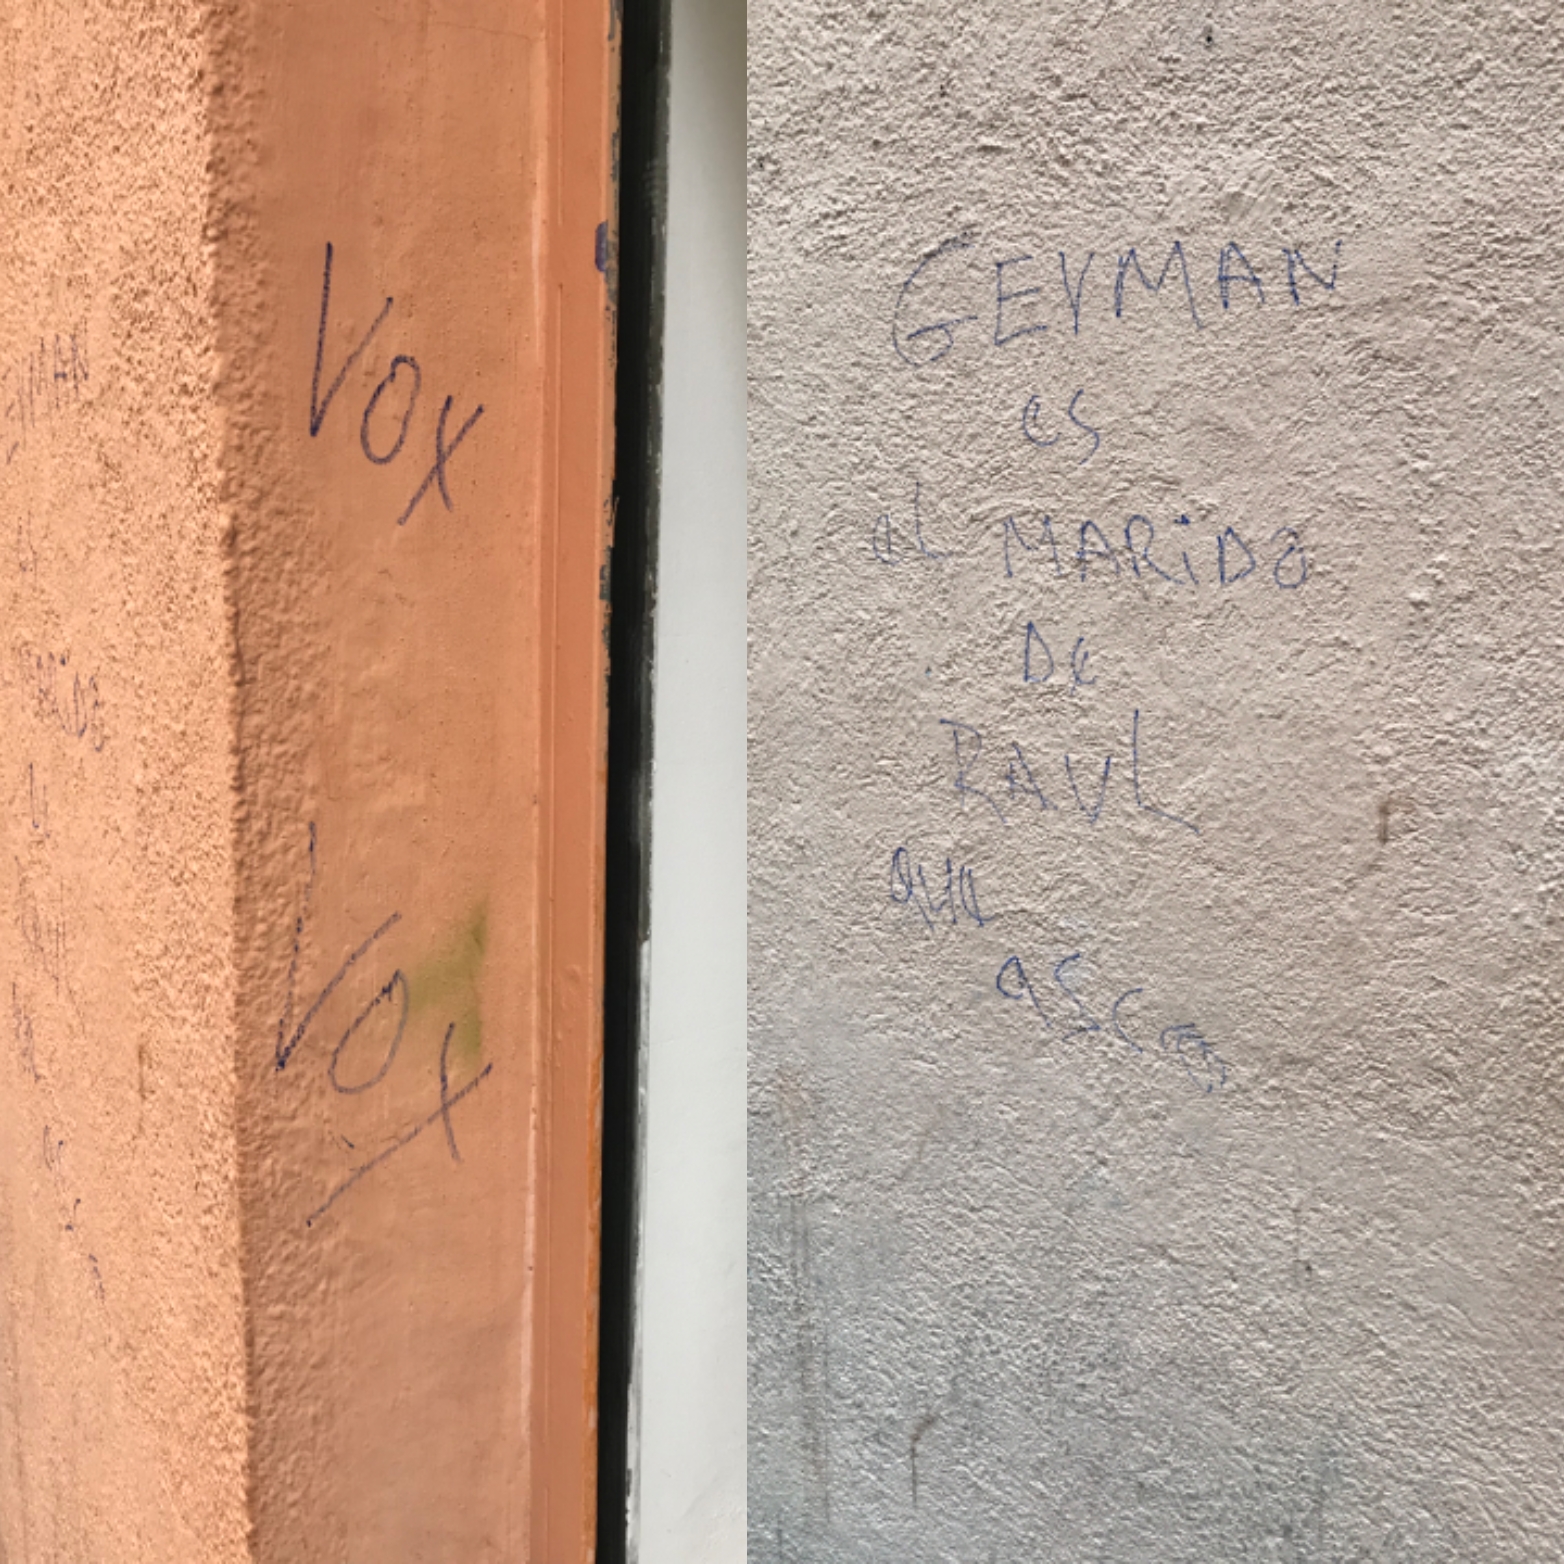 Pintadas homófobas contra la sede de la asociación Kifkif en Lavapiés